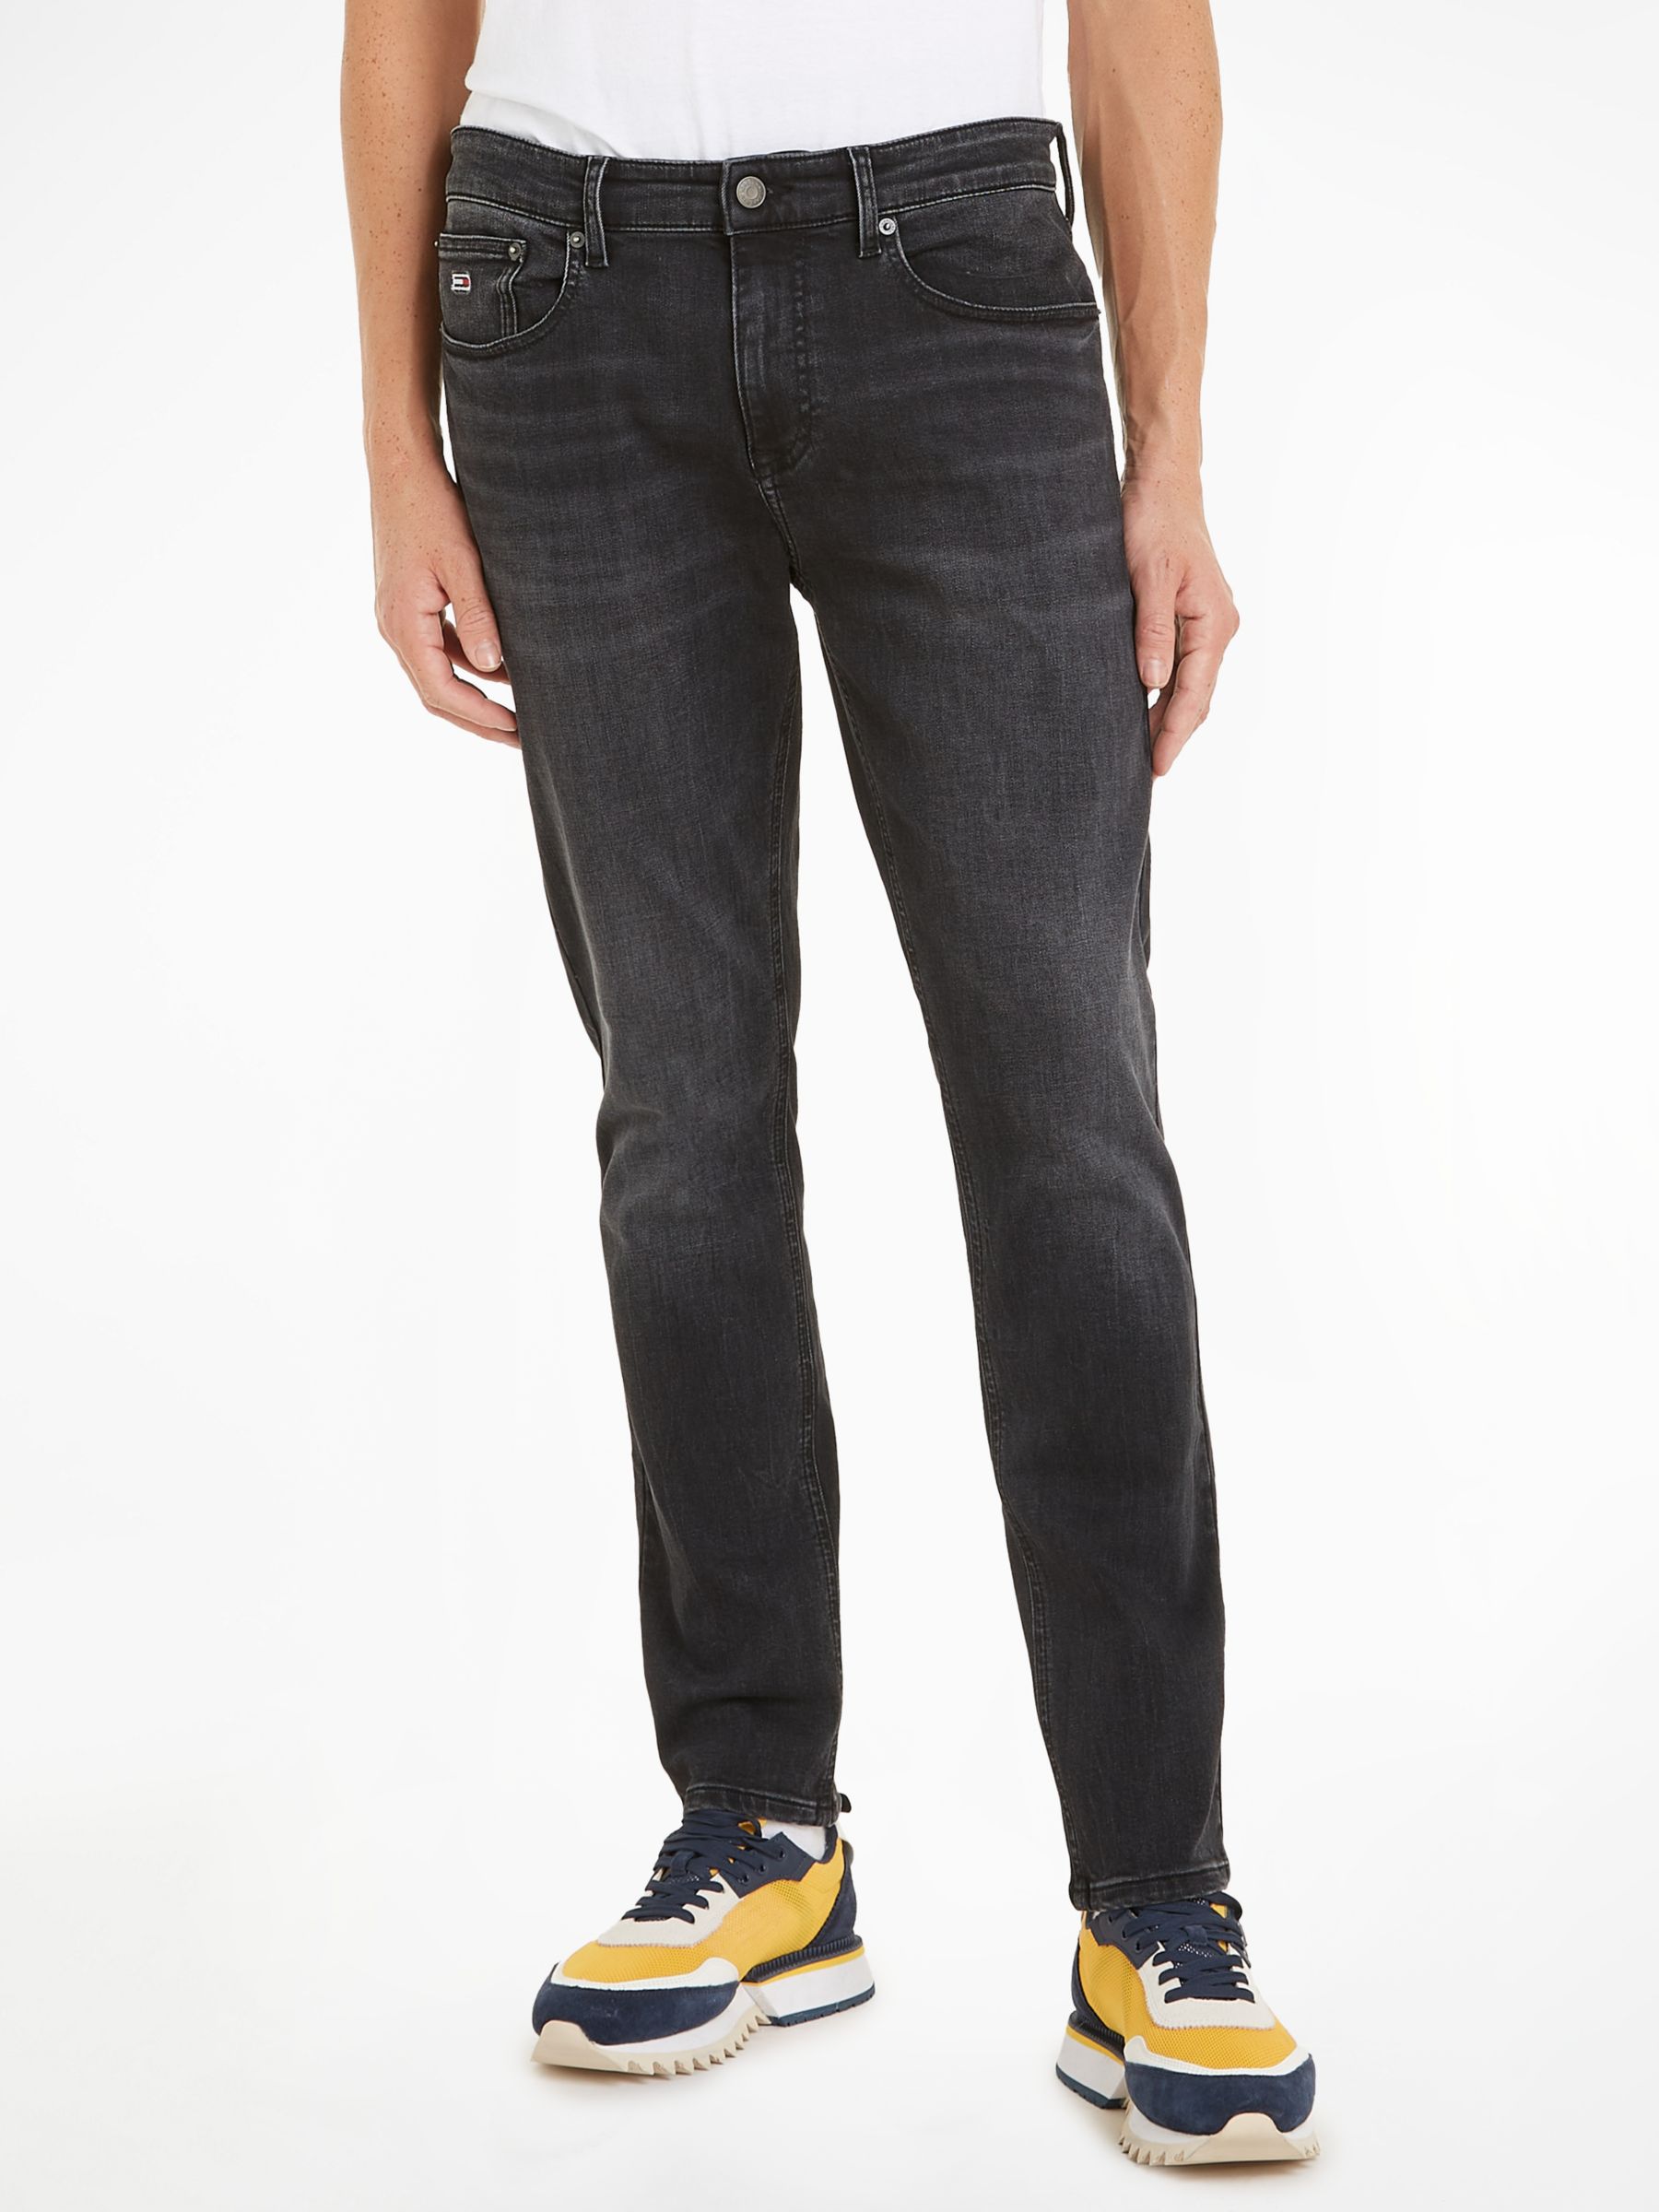 Tommy Jeans Austin Slim Fit Jeans, Black, 32L